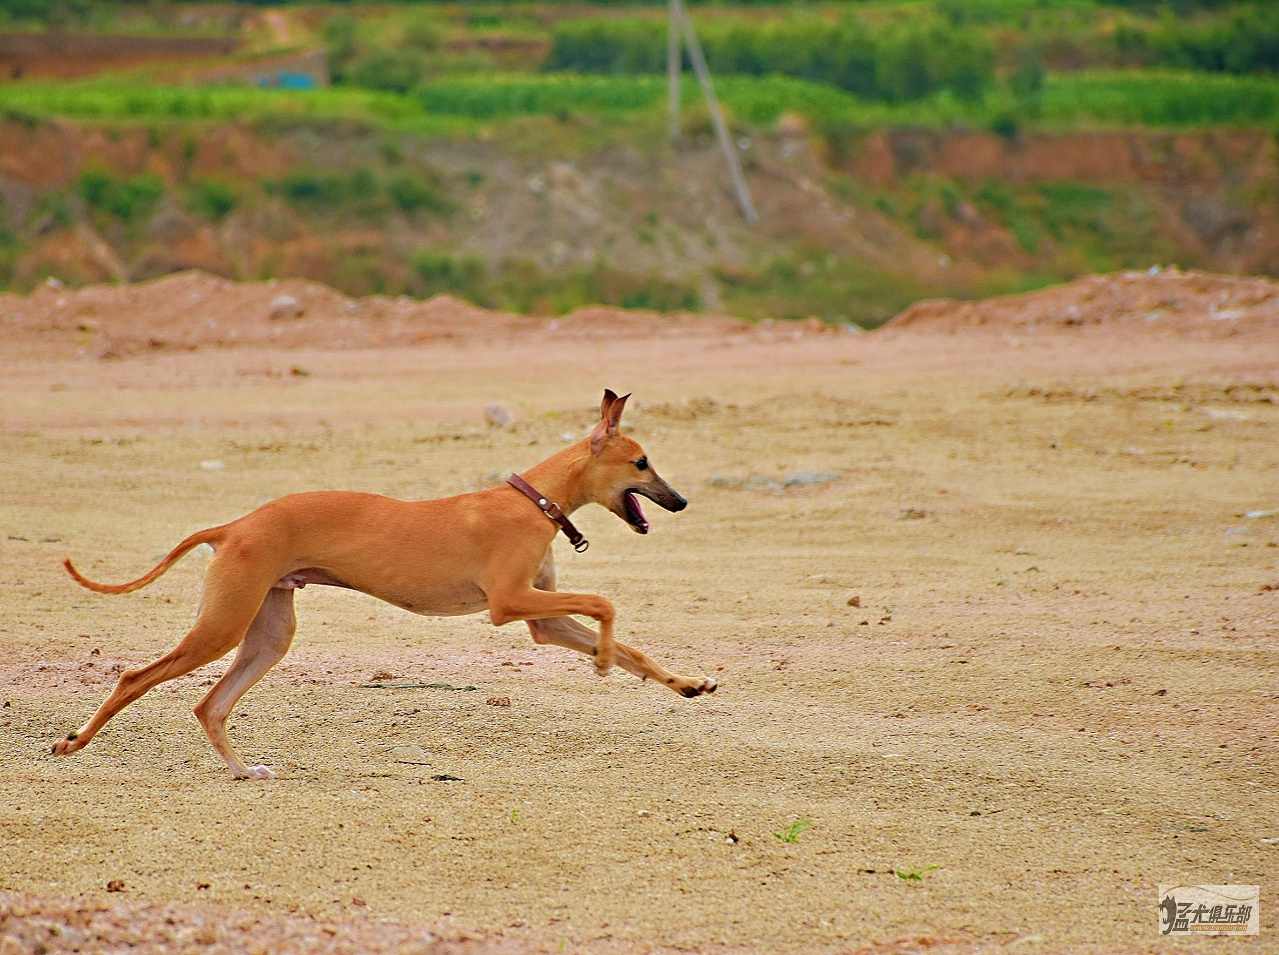 第一次养惠比特犬，小布和点点5个多月了。 - 格力|惠比特 - 猛犬俱乐部-中国具有影响力的猛犬网站 - Powered by Discuz!